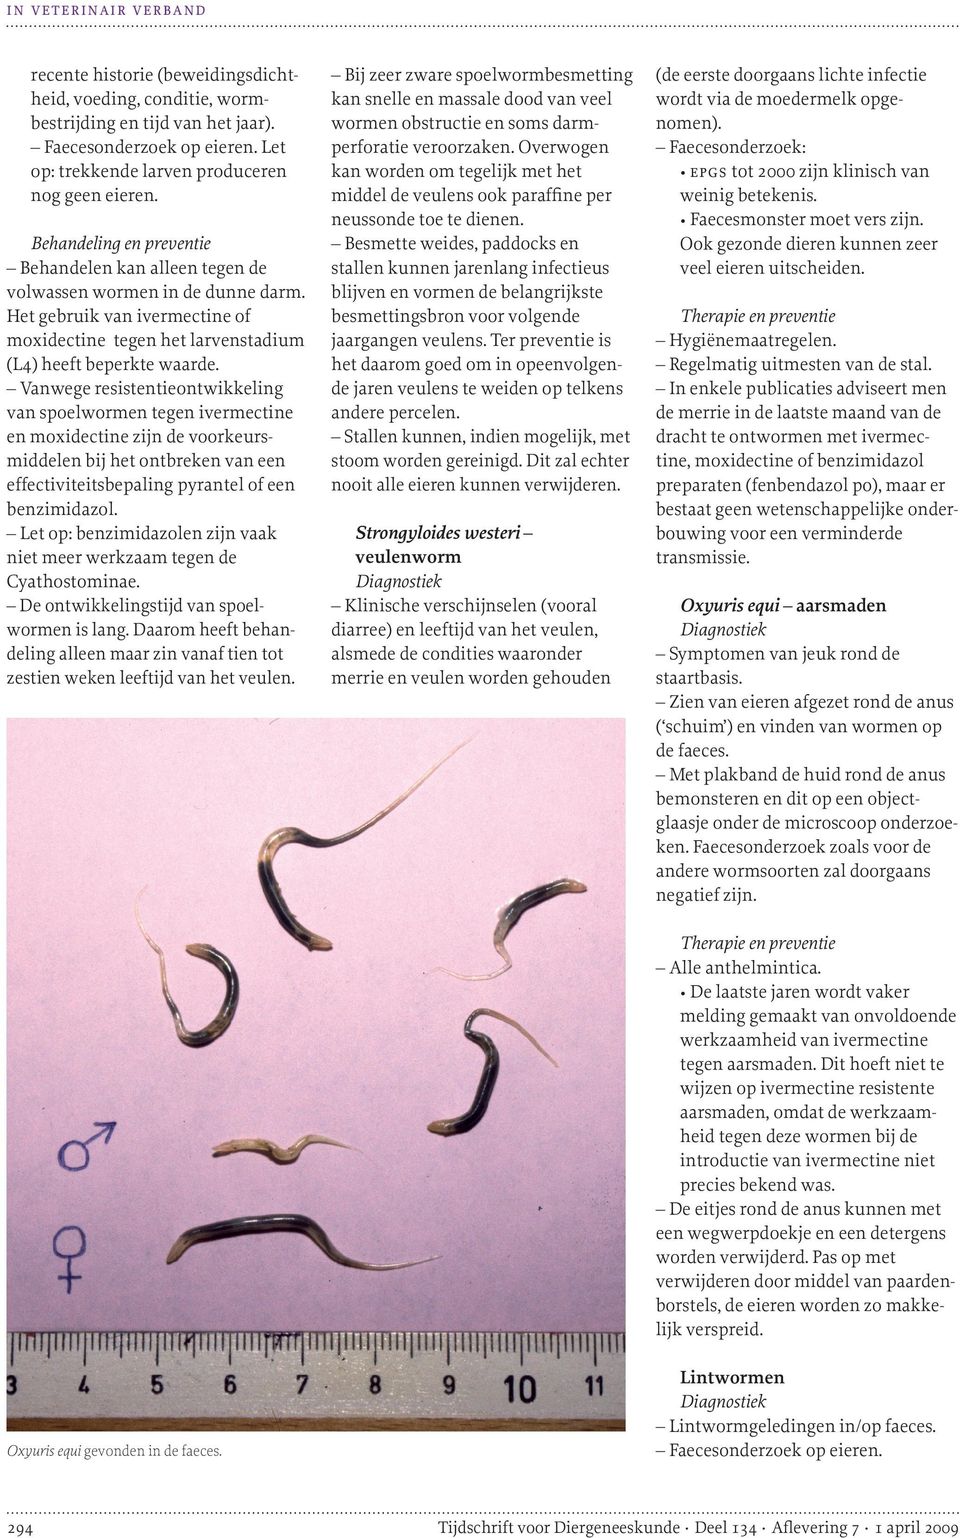 Vanwege resistentieontwikkeling van spoelwormen tegen ivermectine en moxidectine zijn de voorkeurs middelen bij het ontbreken van een effectiviteitsbepaling pyrantel of een benzimidazol.